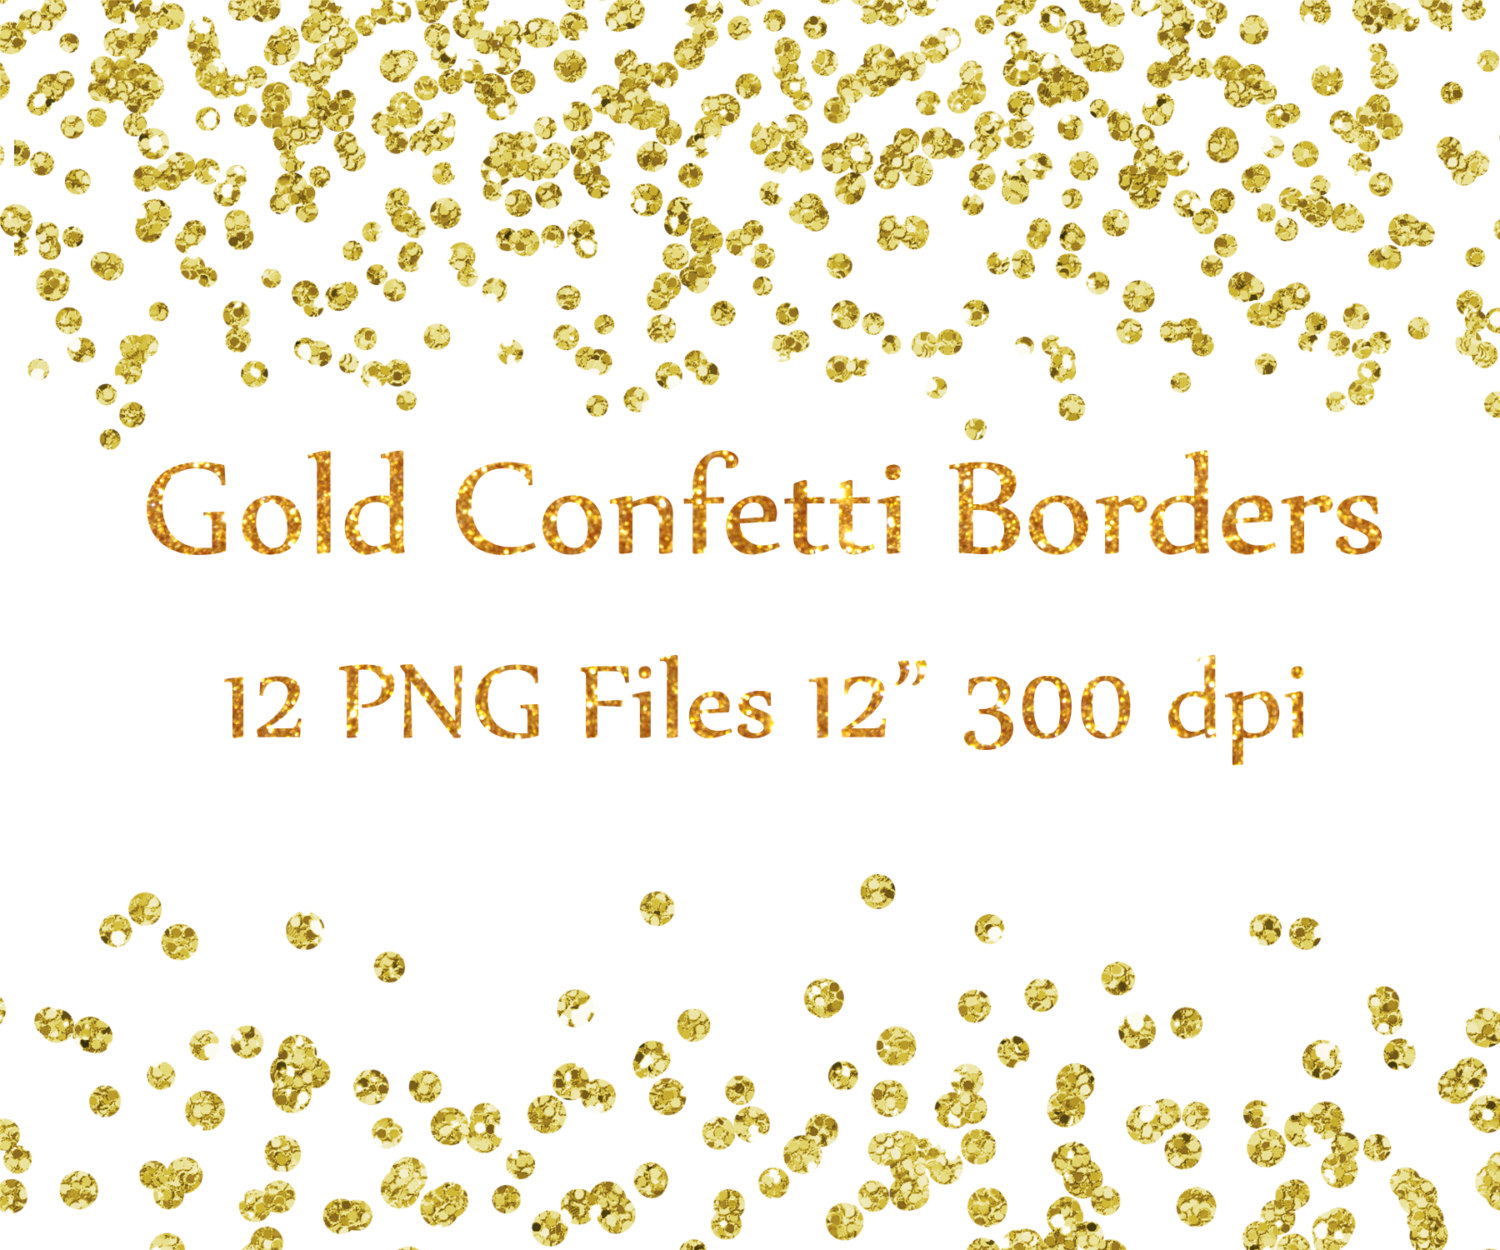 Gold Confetti Borders clipart: GLITTER CONFETTI by ChiliPapers